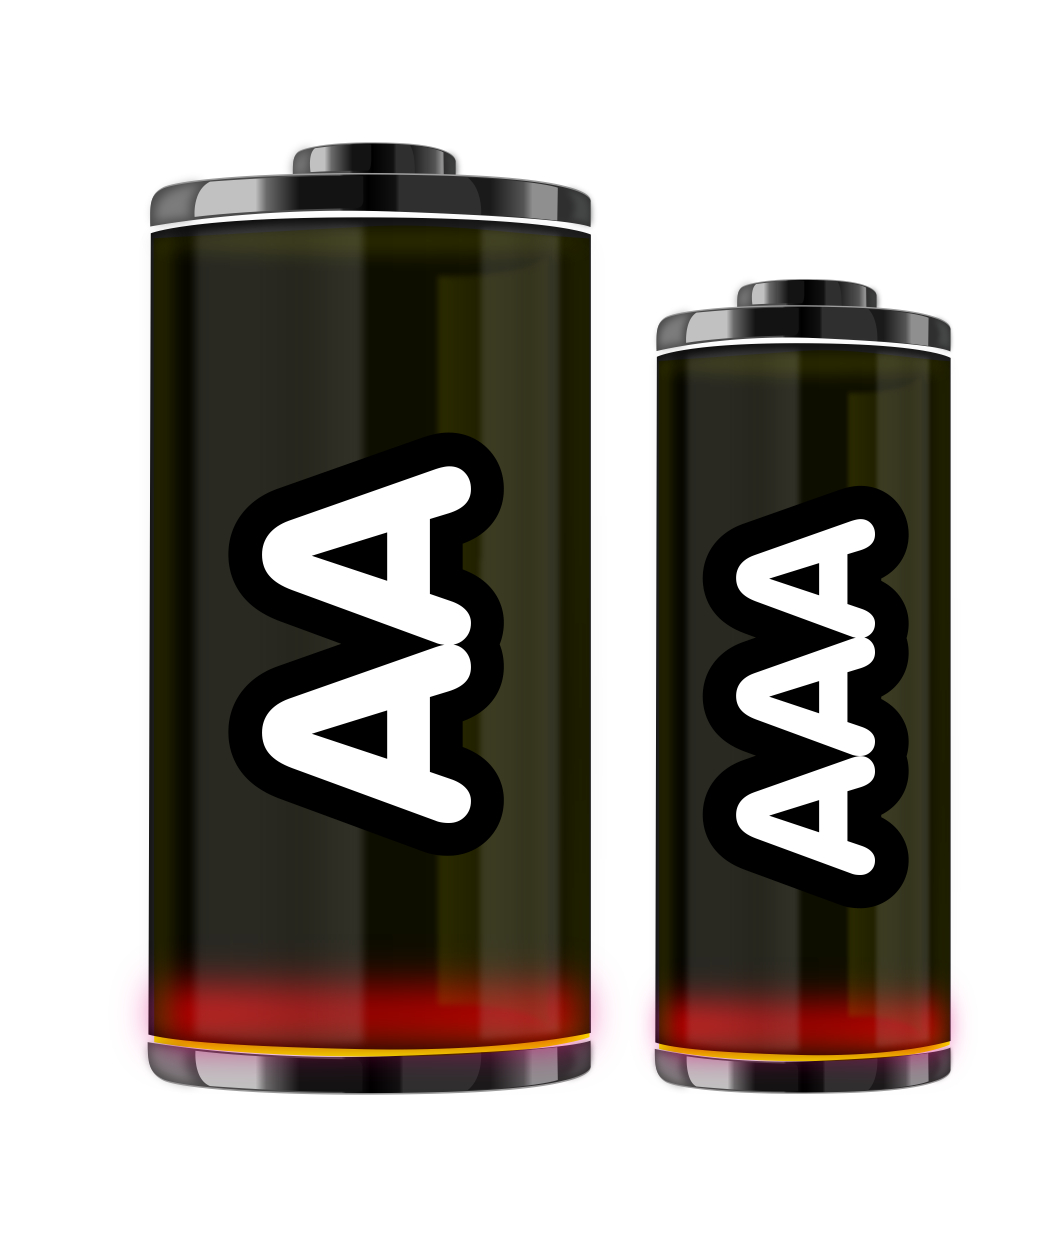 2 ks kvalitních alkalických baterií AA nebo AAA  pro Váš nový ovladač